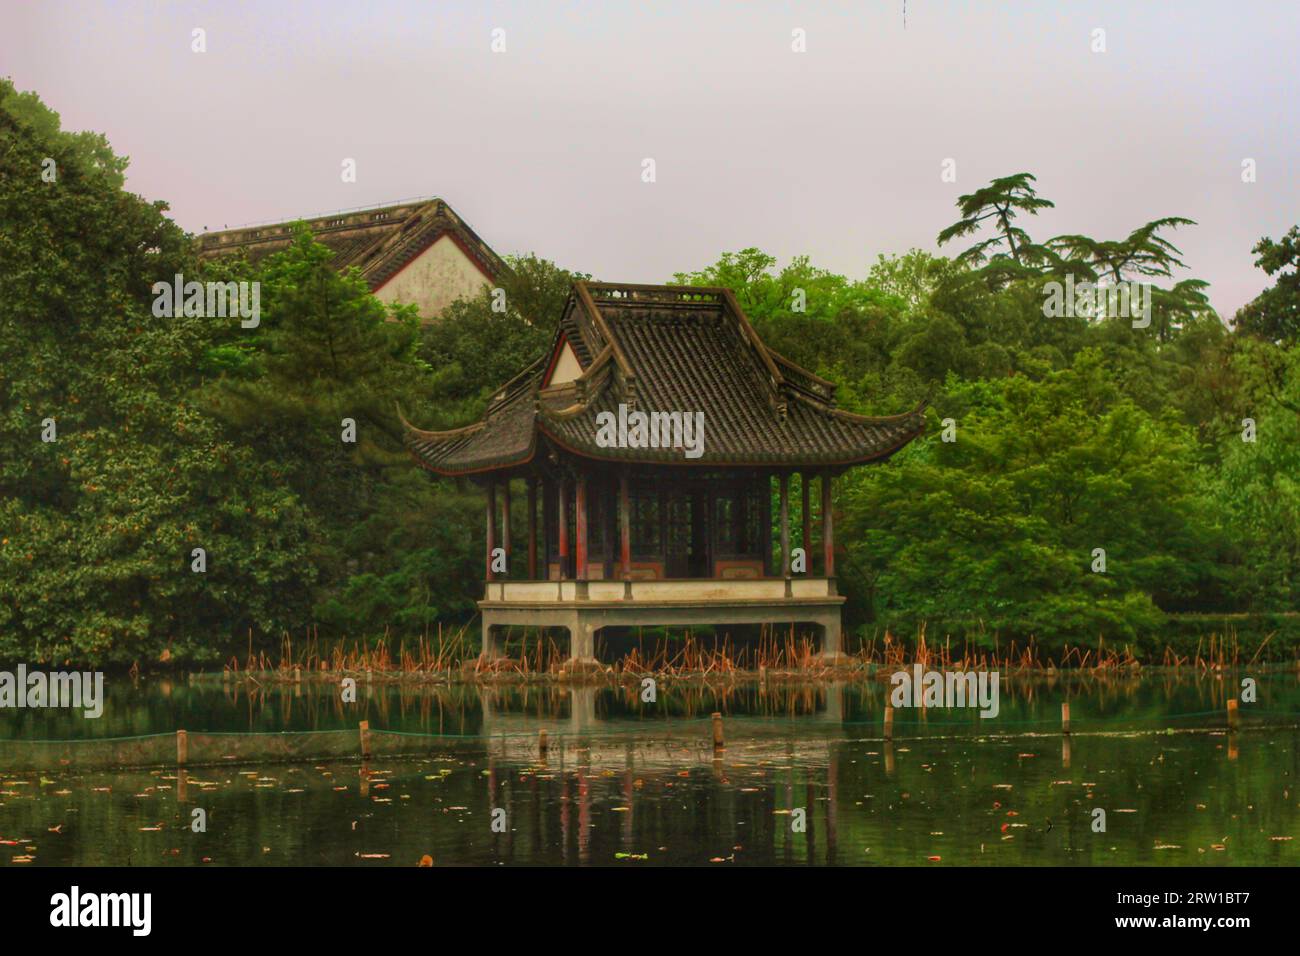 Capture el encanto sereno de un río que serpentea a través de las casas tradicionales y la exquisita belleza de la naturaleza en el abrazo de China. Foto de stock